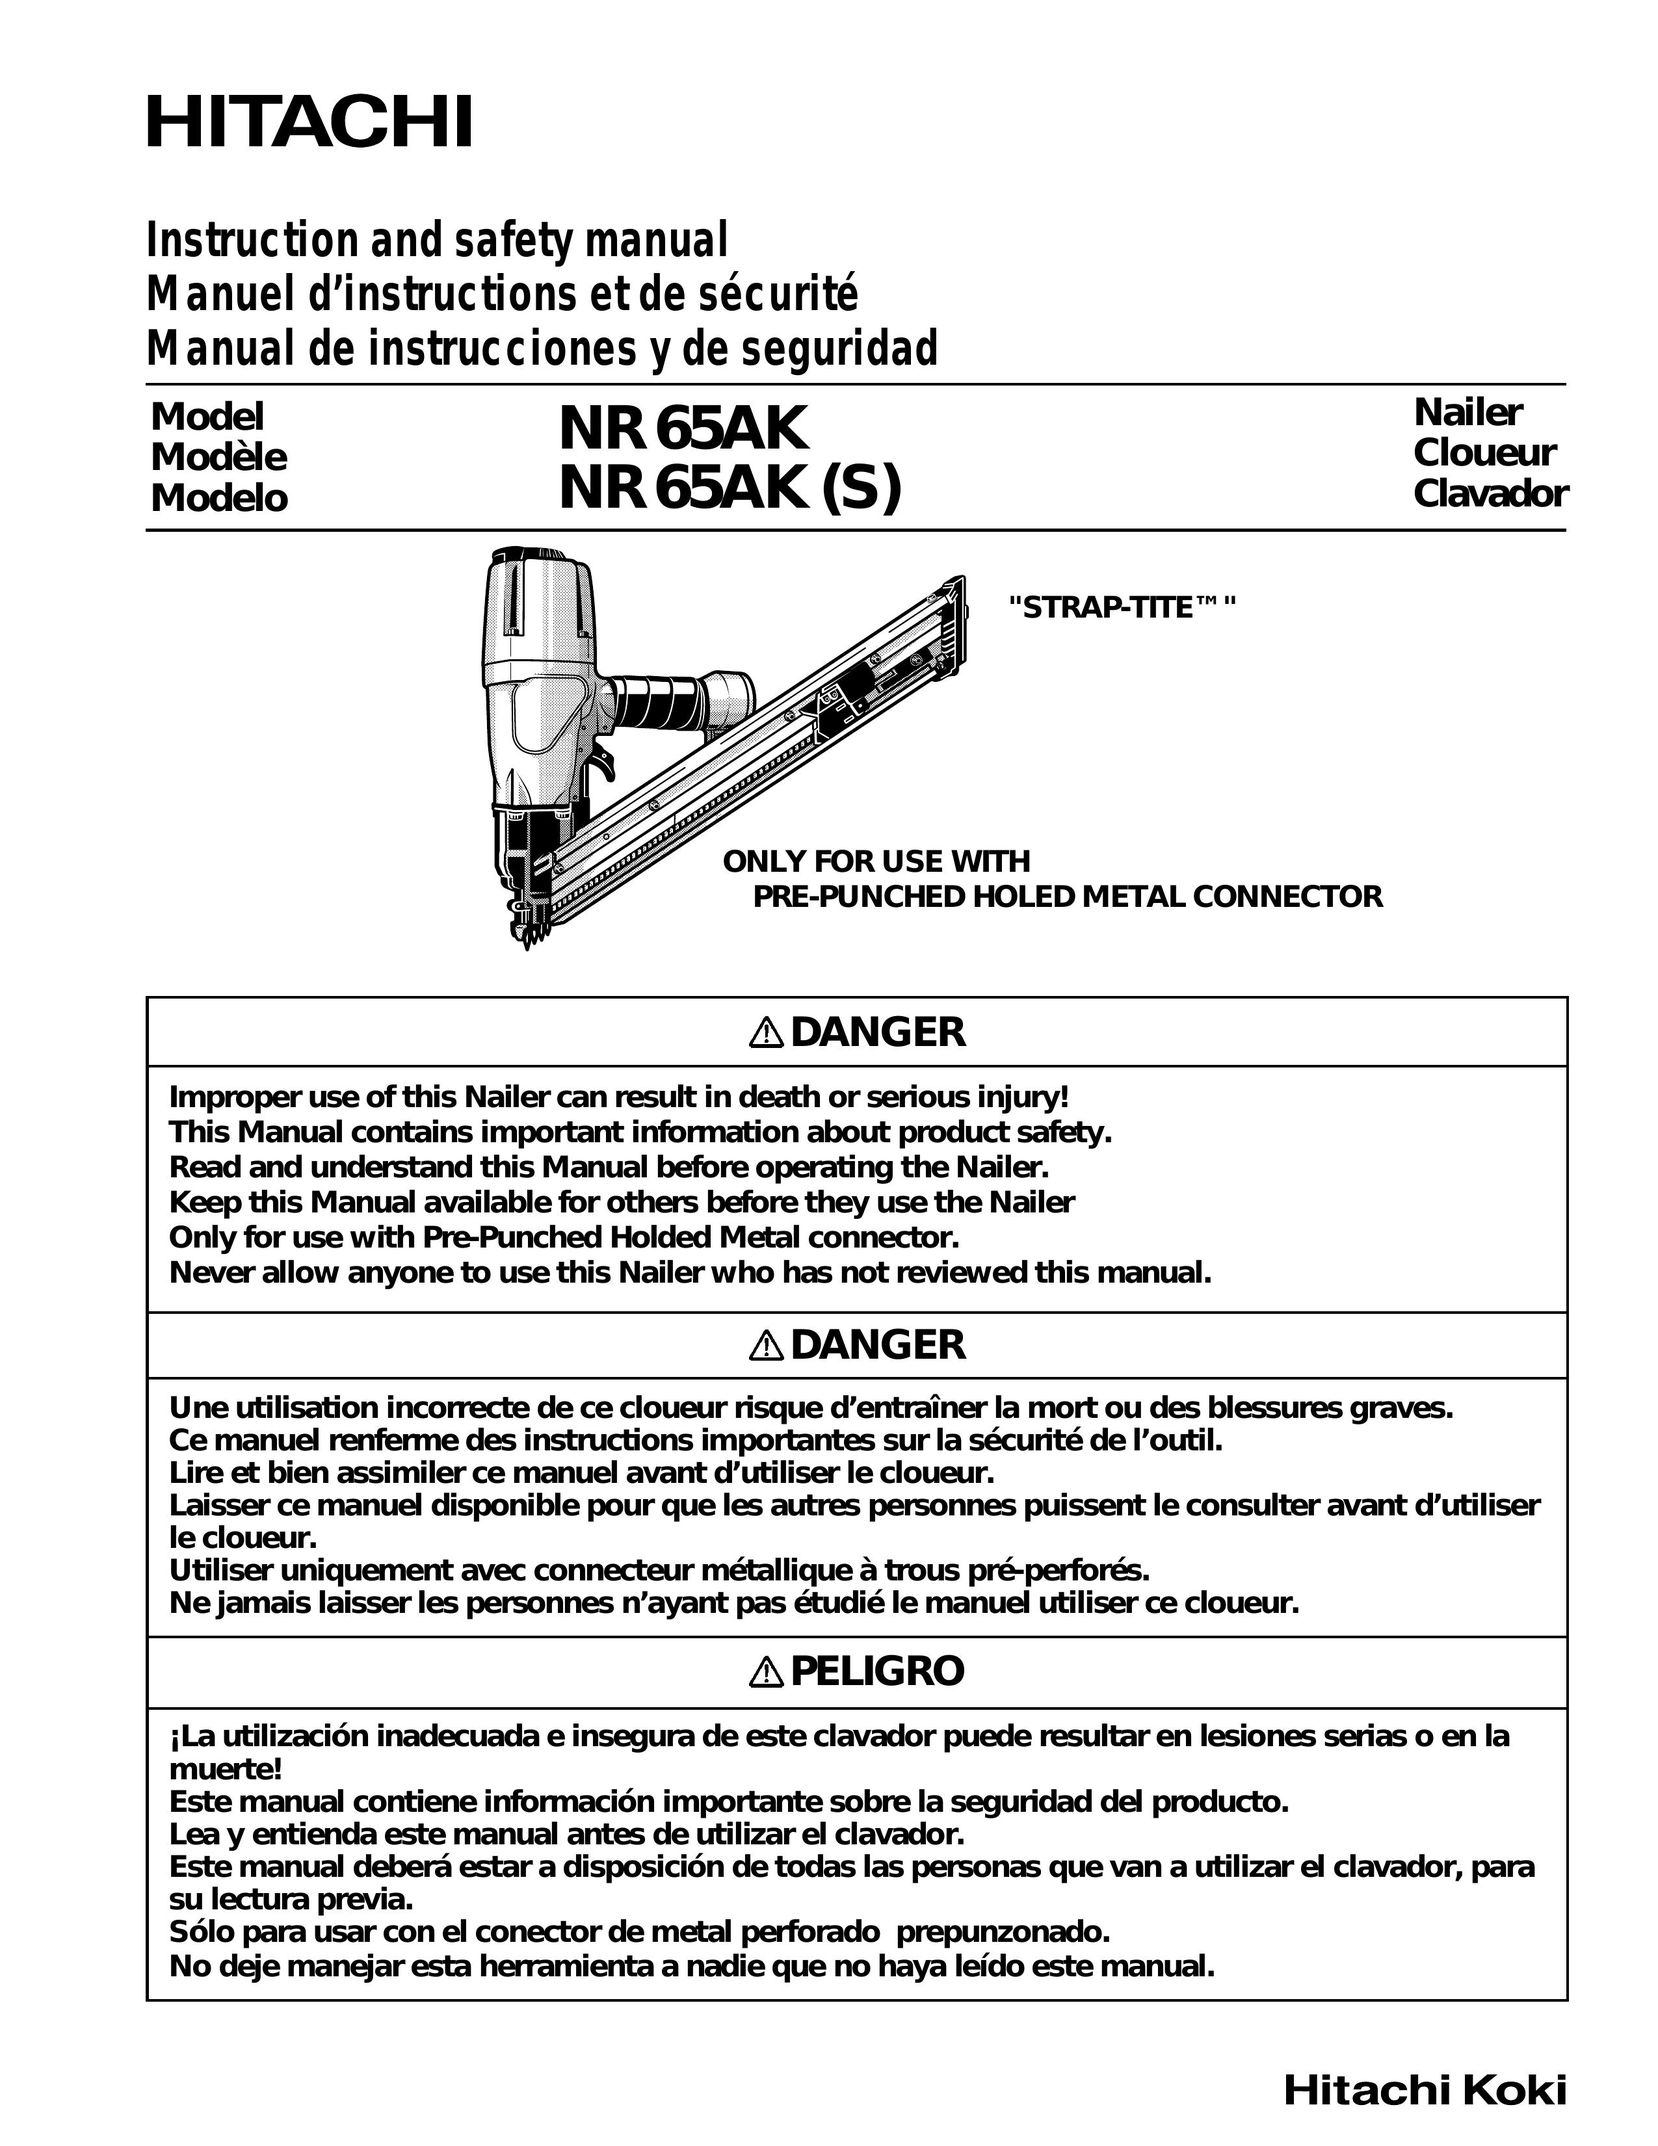 Hitachi nr65AK Nail Gun User Manual